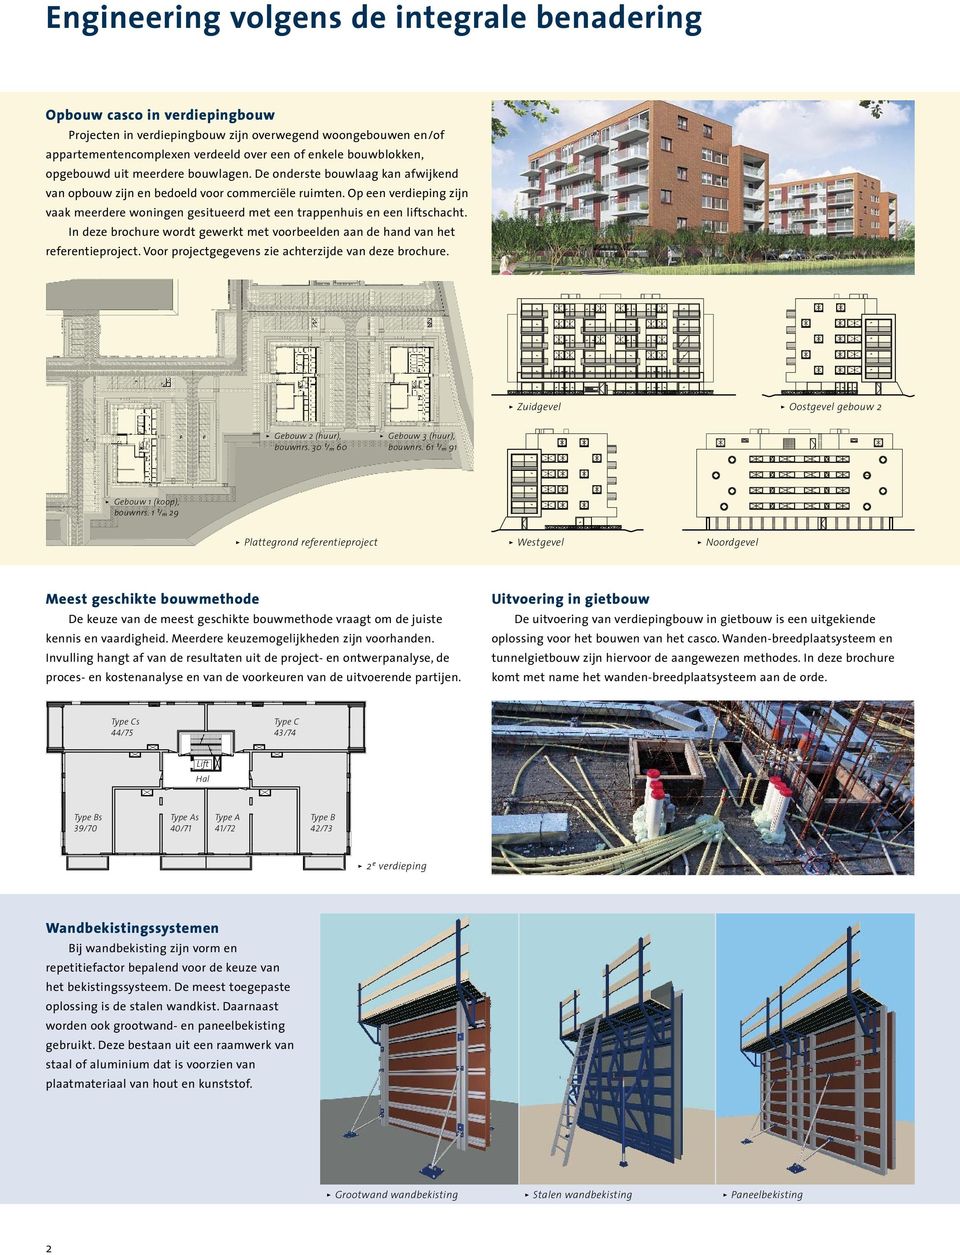 Op een verdieping zijn vaak meerdere woningen gesitueerd met een trappenhuis en een lift schacht. In deze brochure wordt gewerkt met voorbeelden aan de hand van het referentieproject.